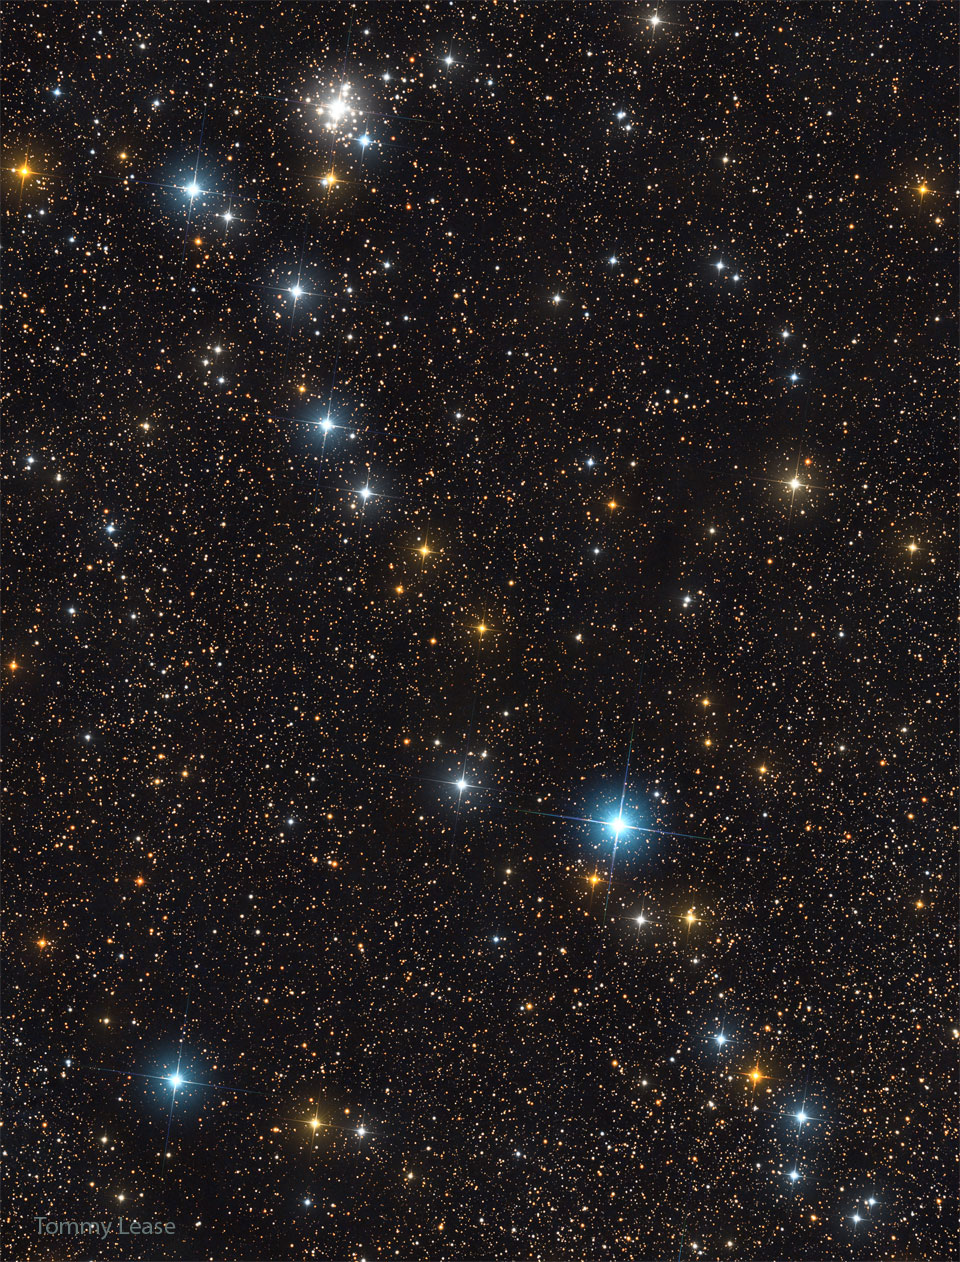 Der Asterismus Kembles Kaskade im Sternbild Giraffe verläuft diagonal durchs Bild, links oben befindet sich NGC 1502, der Jolly-Roger-Sternhaufen.